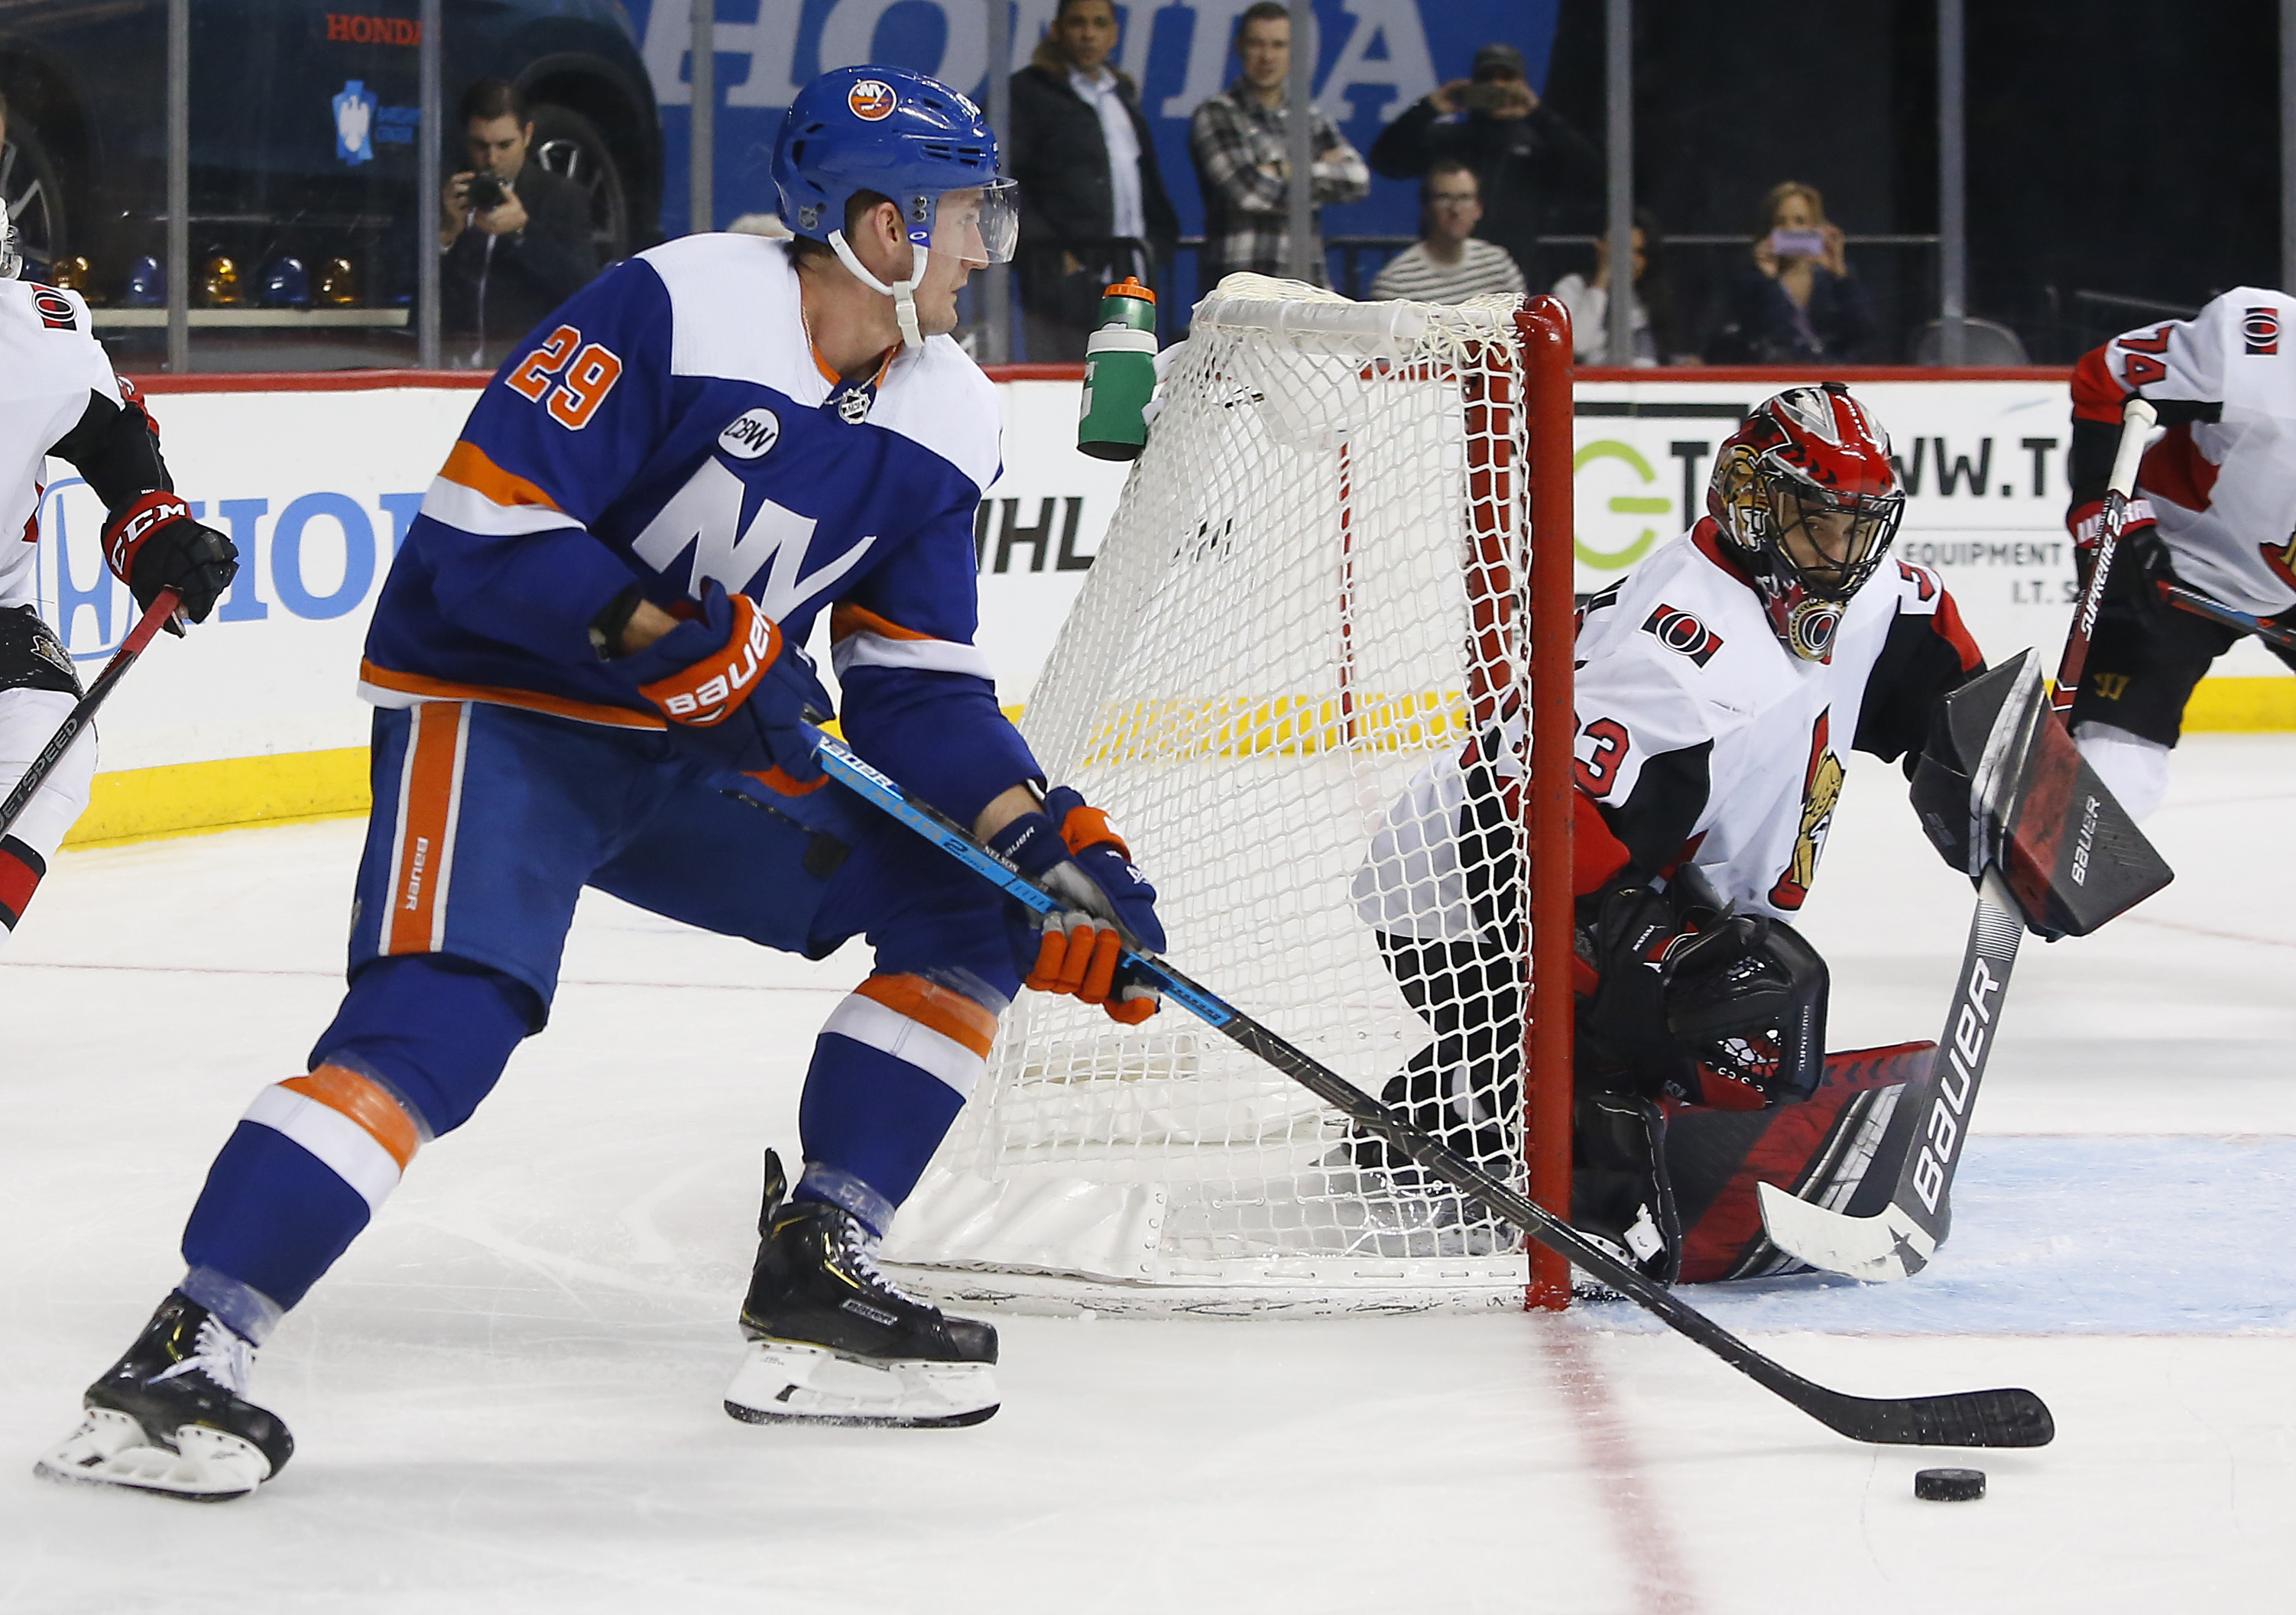 Barzal helps Islanders rally for 6-3 win over Senators